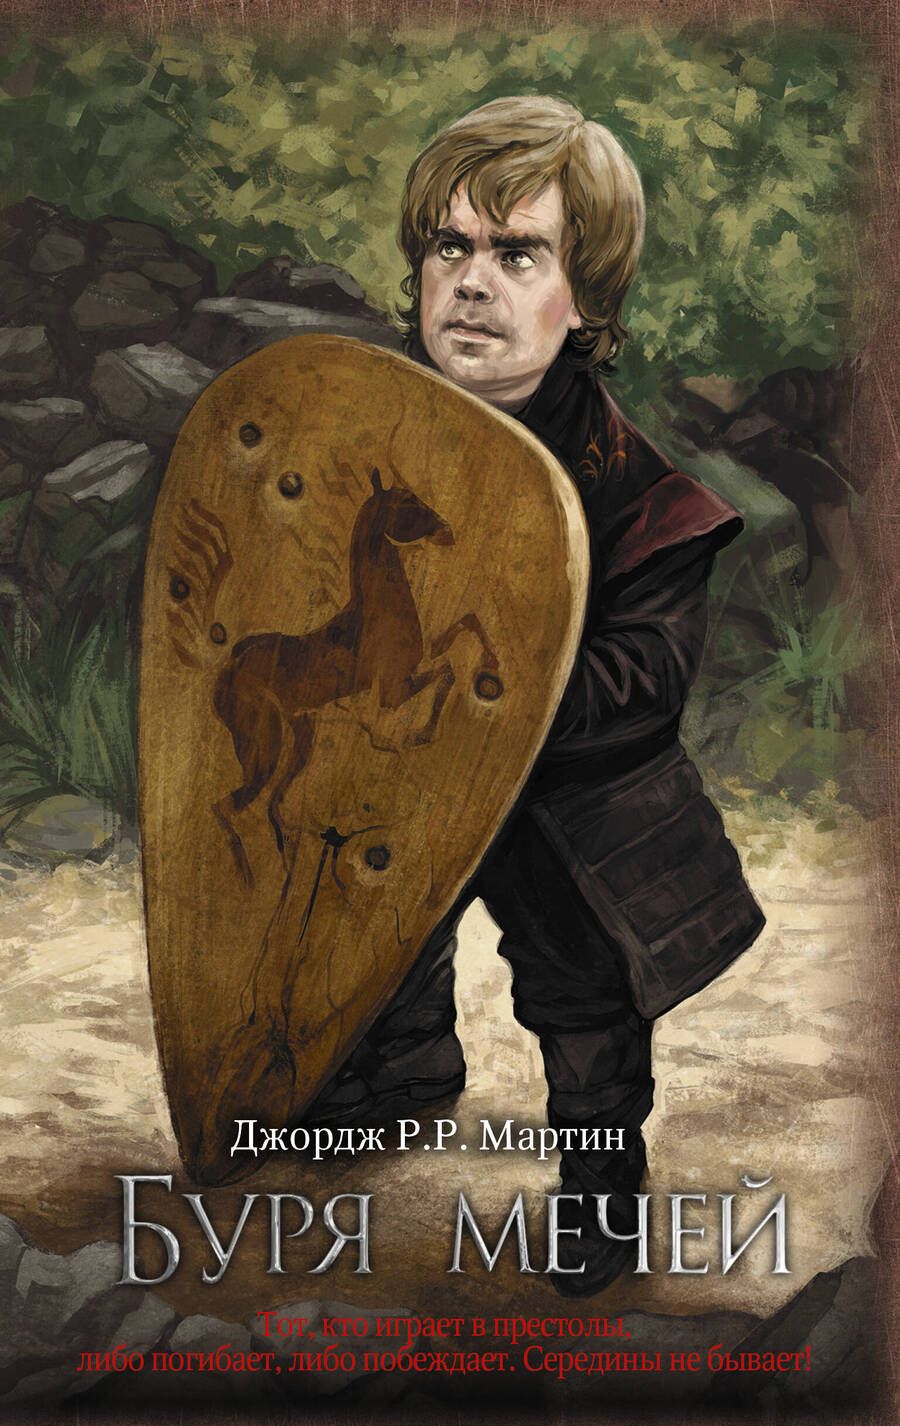 Обложка книги "Мартин: Буря мечей"